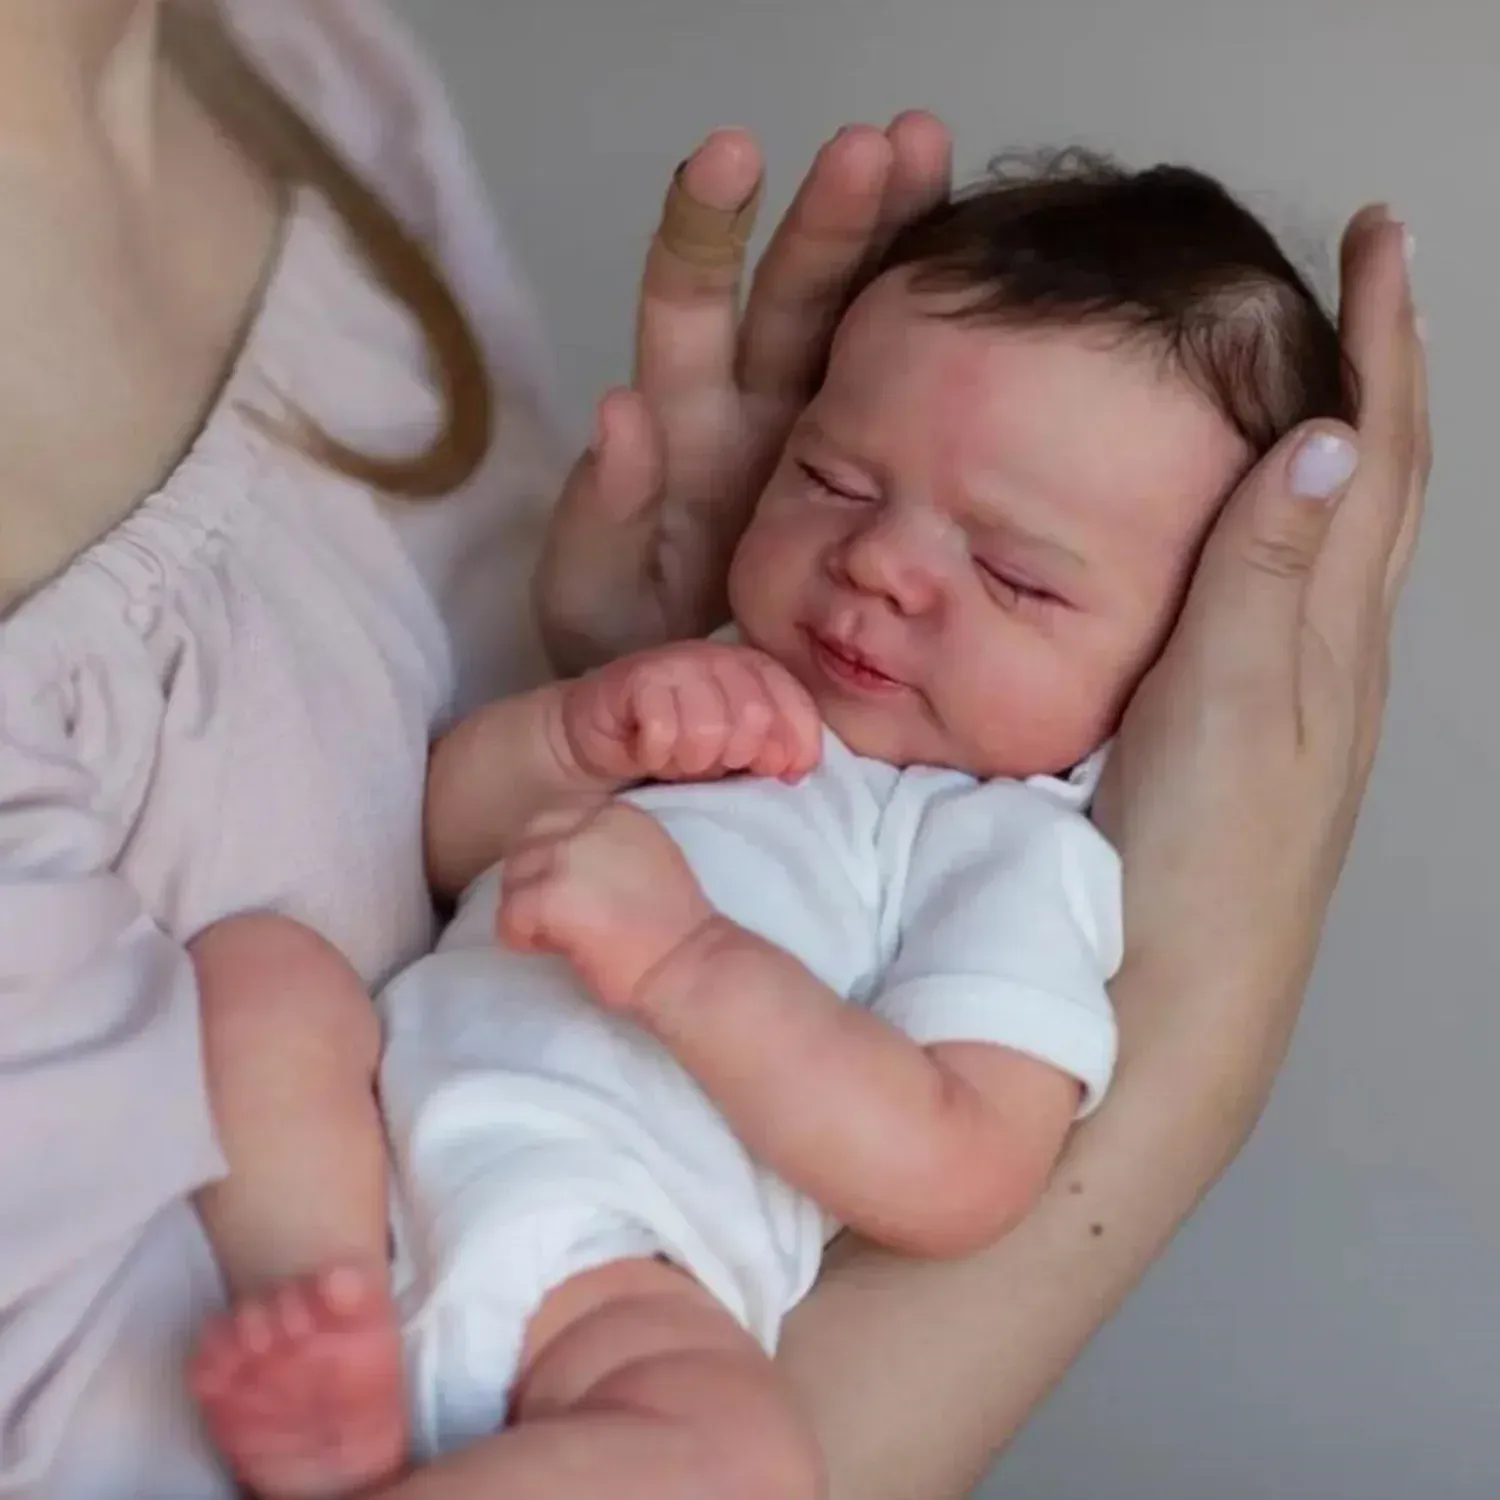 Dolls Bzdoll Realistyczne 48 cm miękkie silikonowe śpiące odrodzone lalka dla dzieci ze skórą 3dpainting, żywy 19 -calowy noworodek bebe słodki prezent urodzinowy